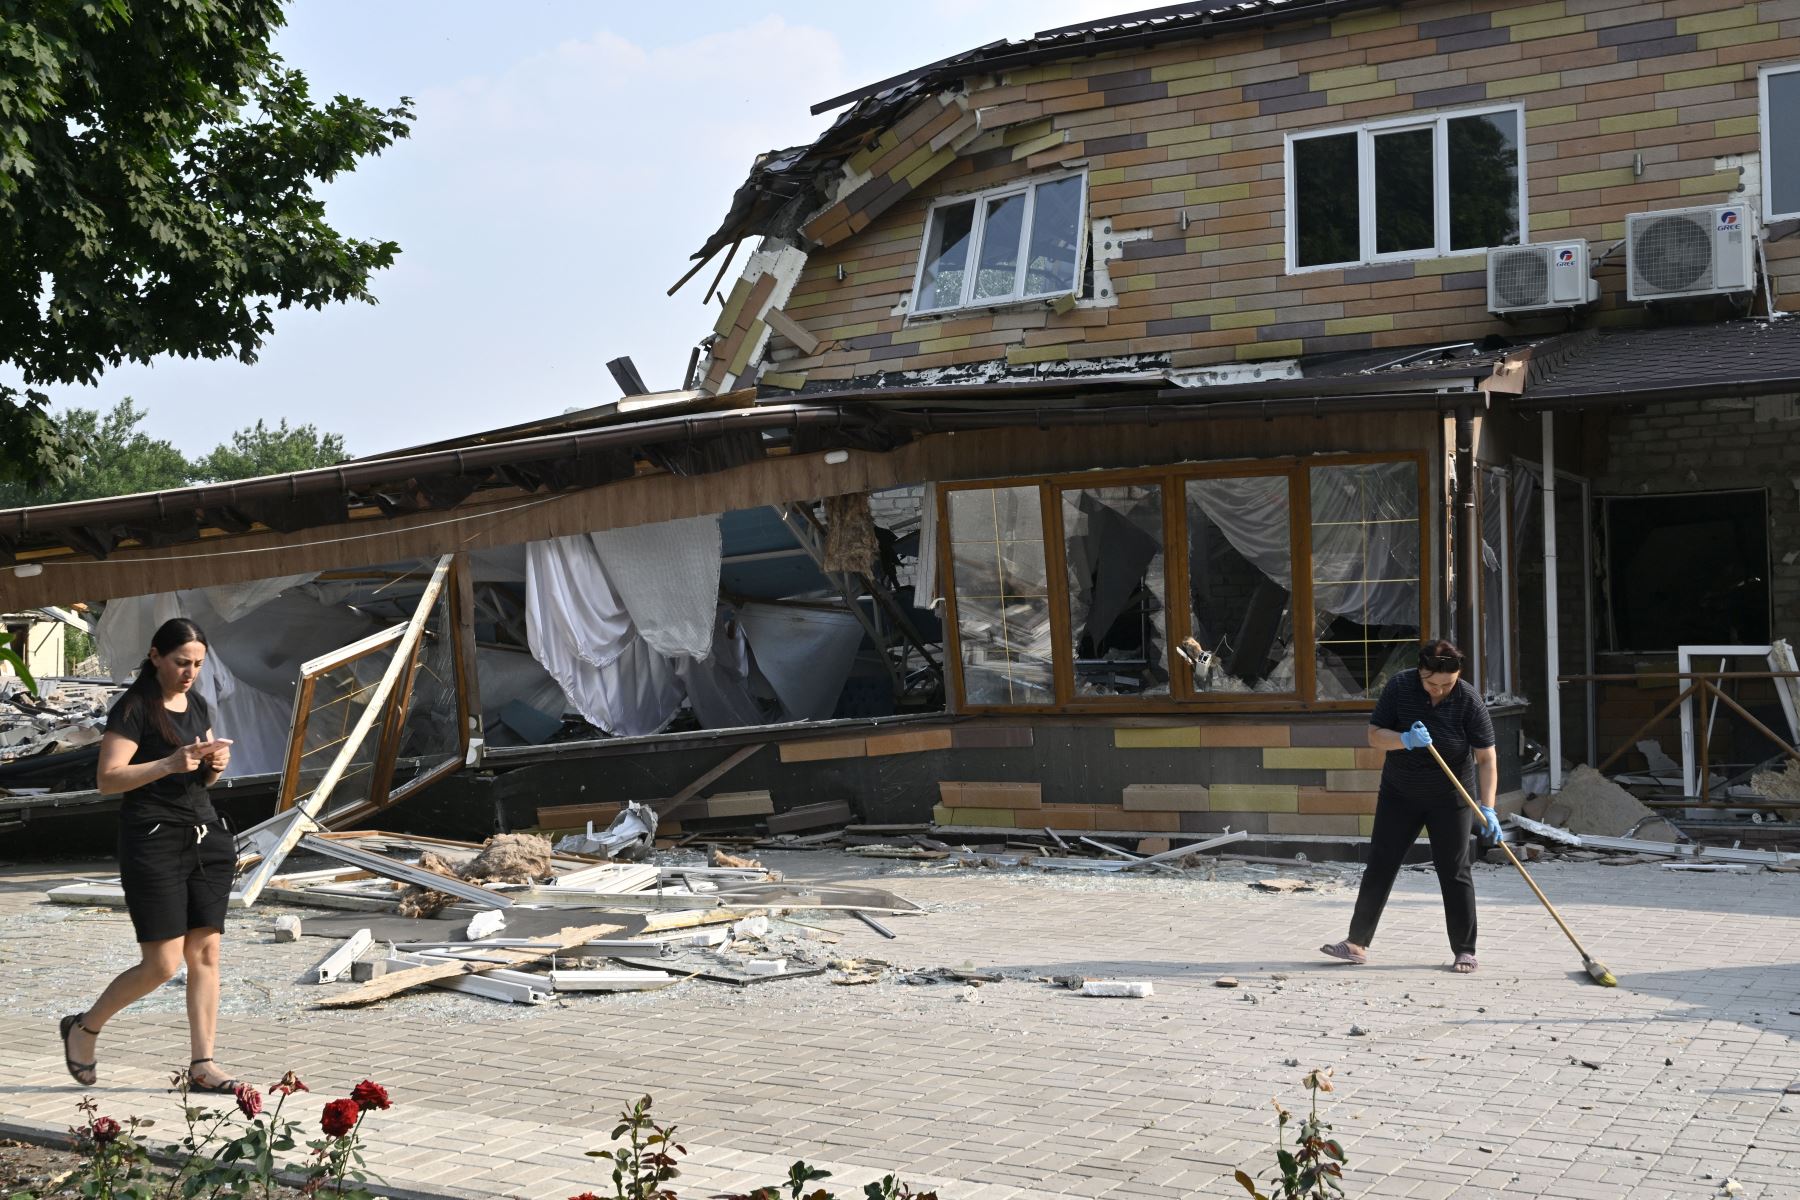 Los empleados limpian los escombros frente a un hotel destruido después de un ataque con cohetes en Kramatorsk.
Foto: AFP